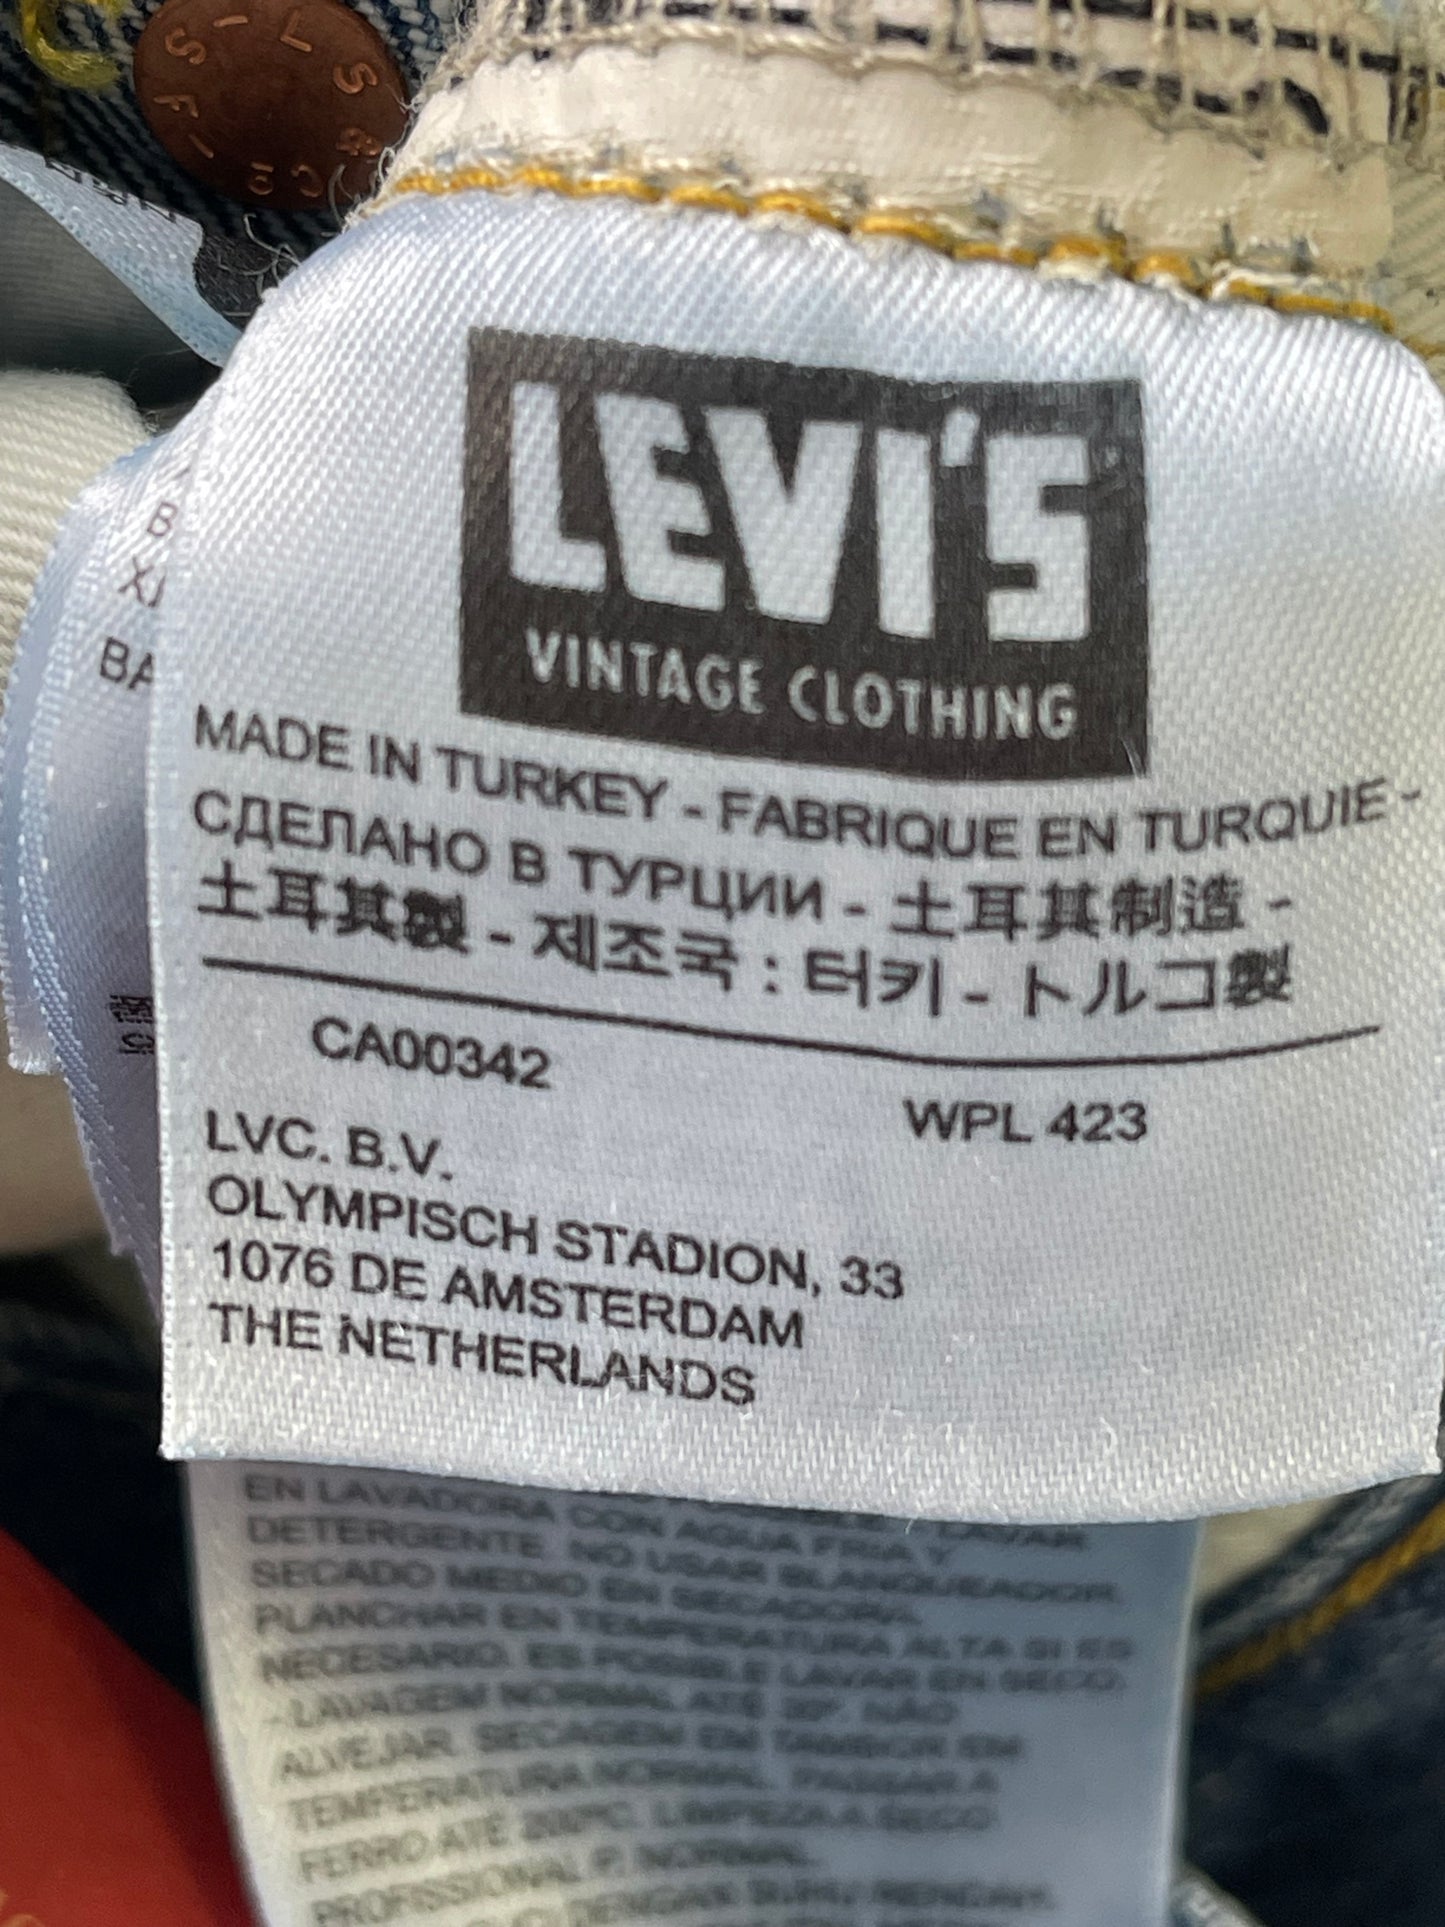 Levi's Vintage Clothing LVC 501 jeans (1954)